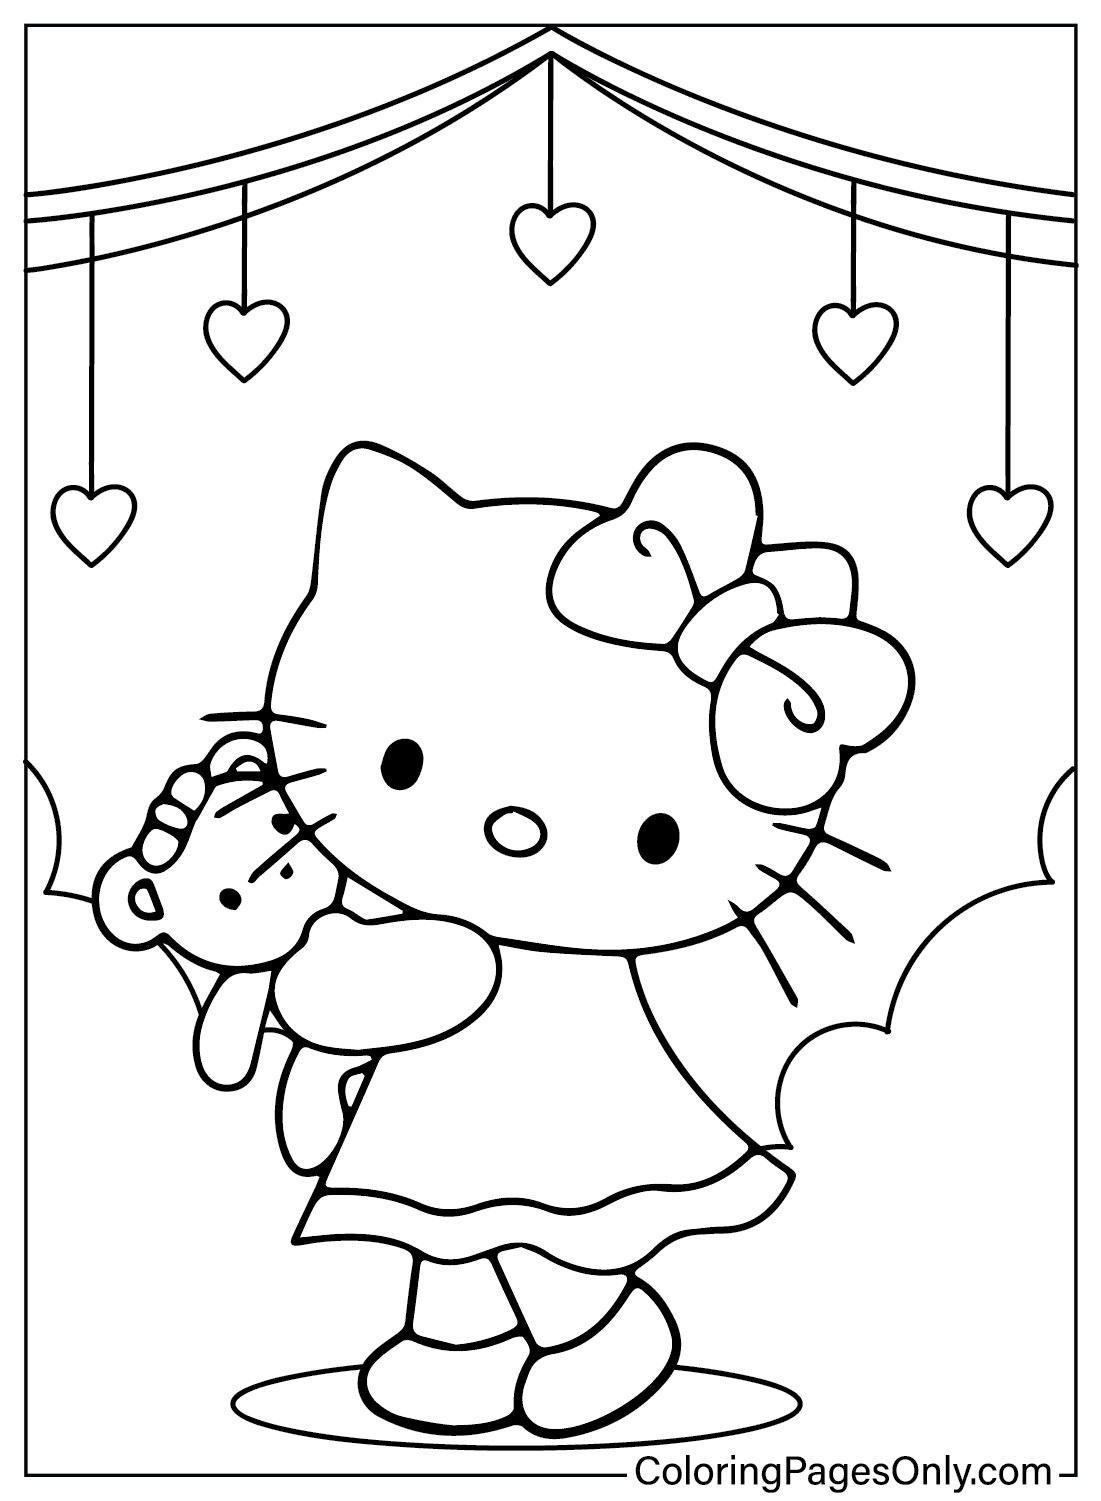 Pagina Para Colorear De Hello Kitty Para Colorear